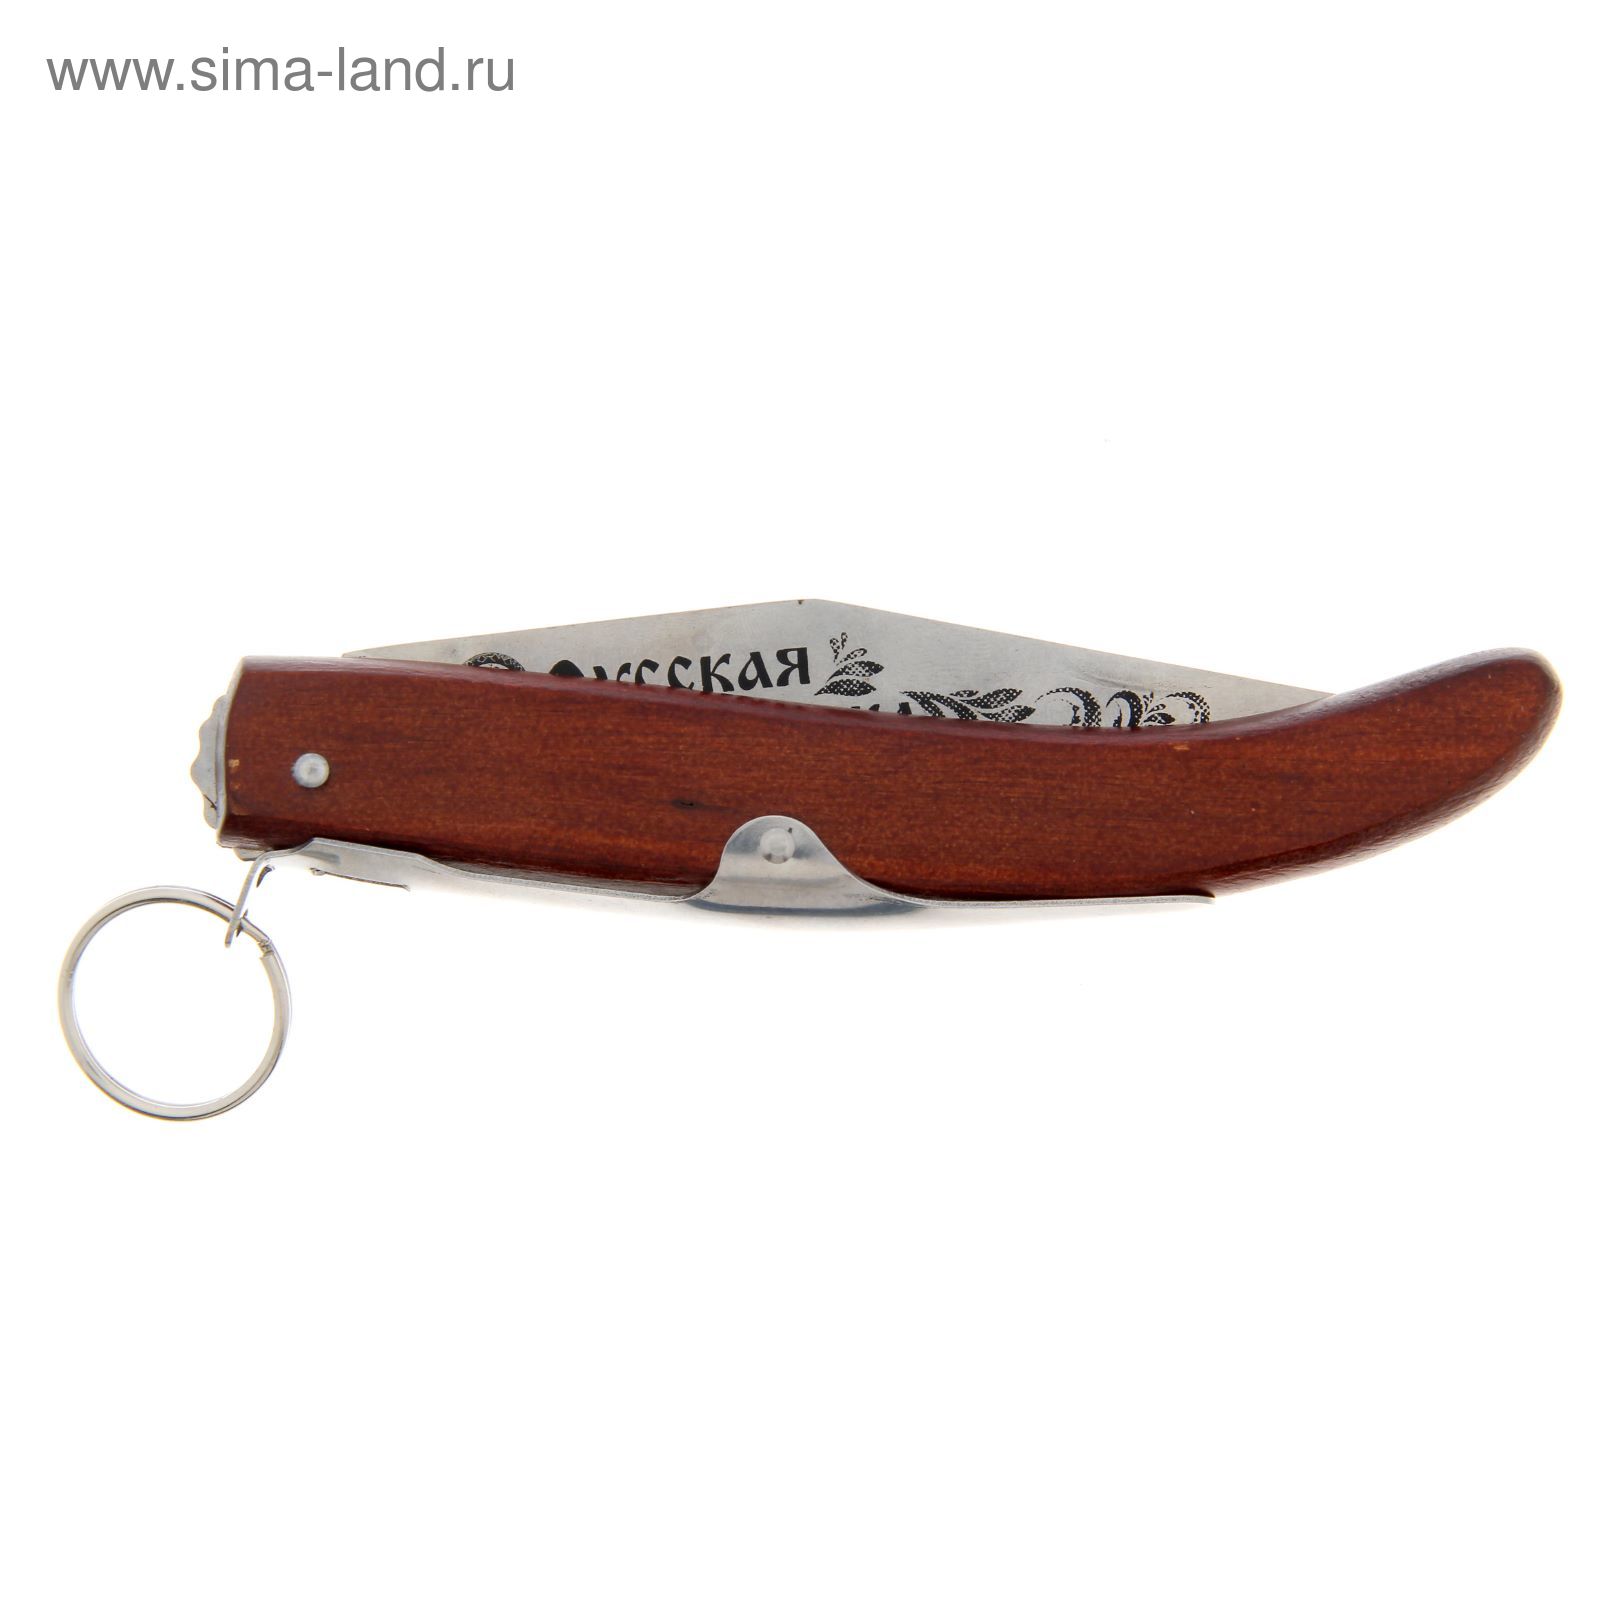 Нож складной "Русская рыбалка", 24,5 х 2,5 см